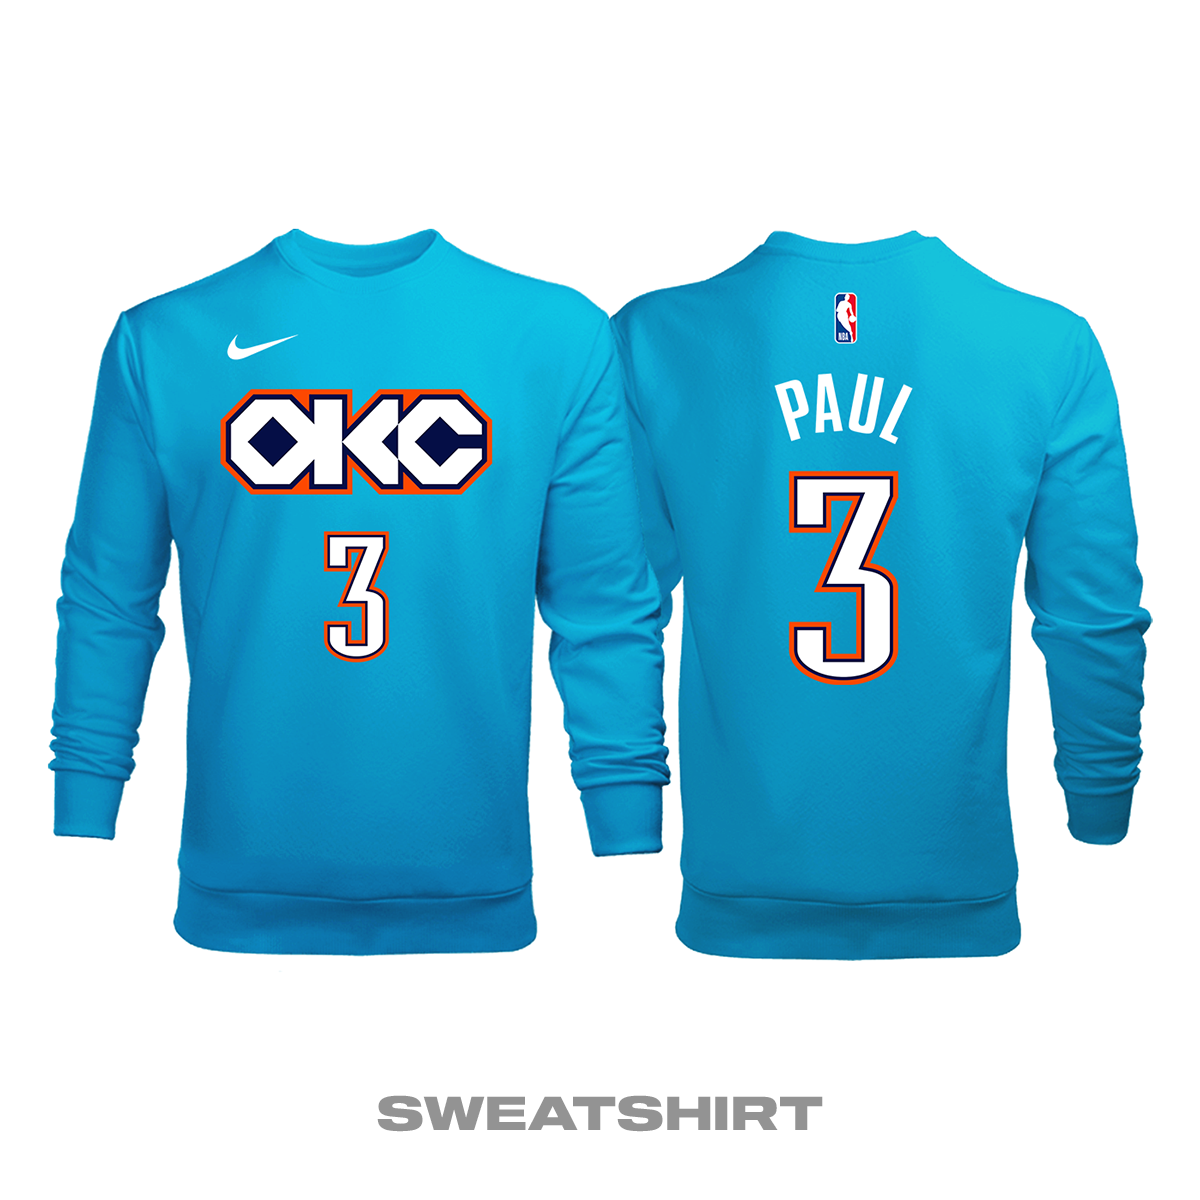 Oklahoma City Thunder: City Edition 2018/2019 Sweatshirt